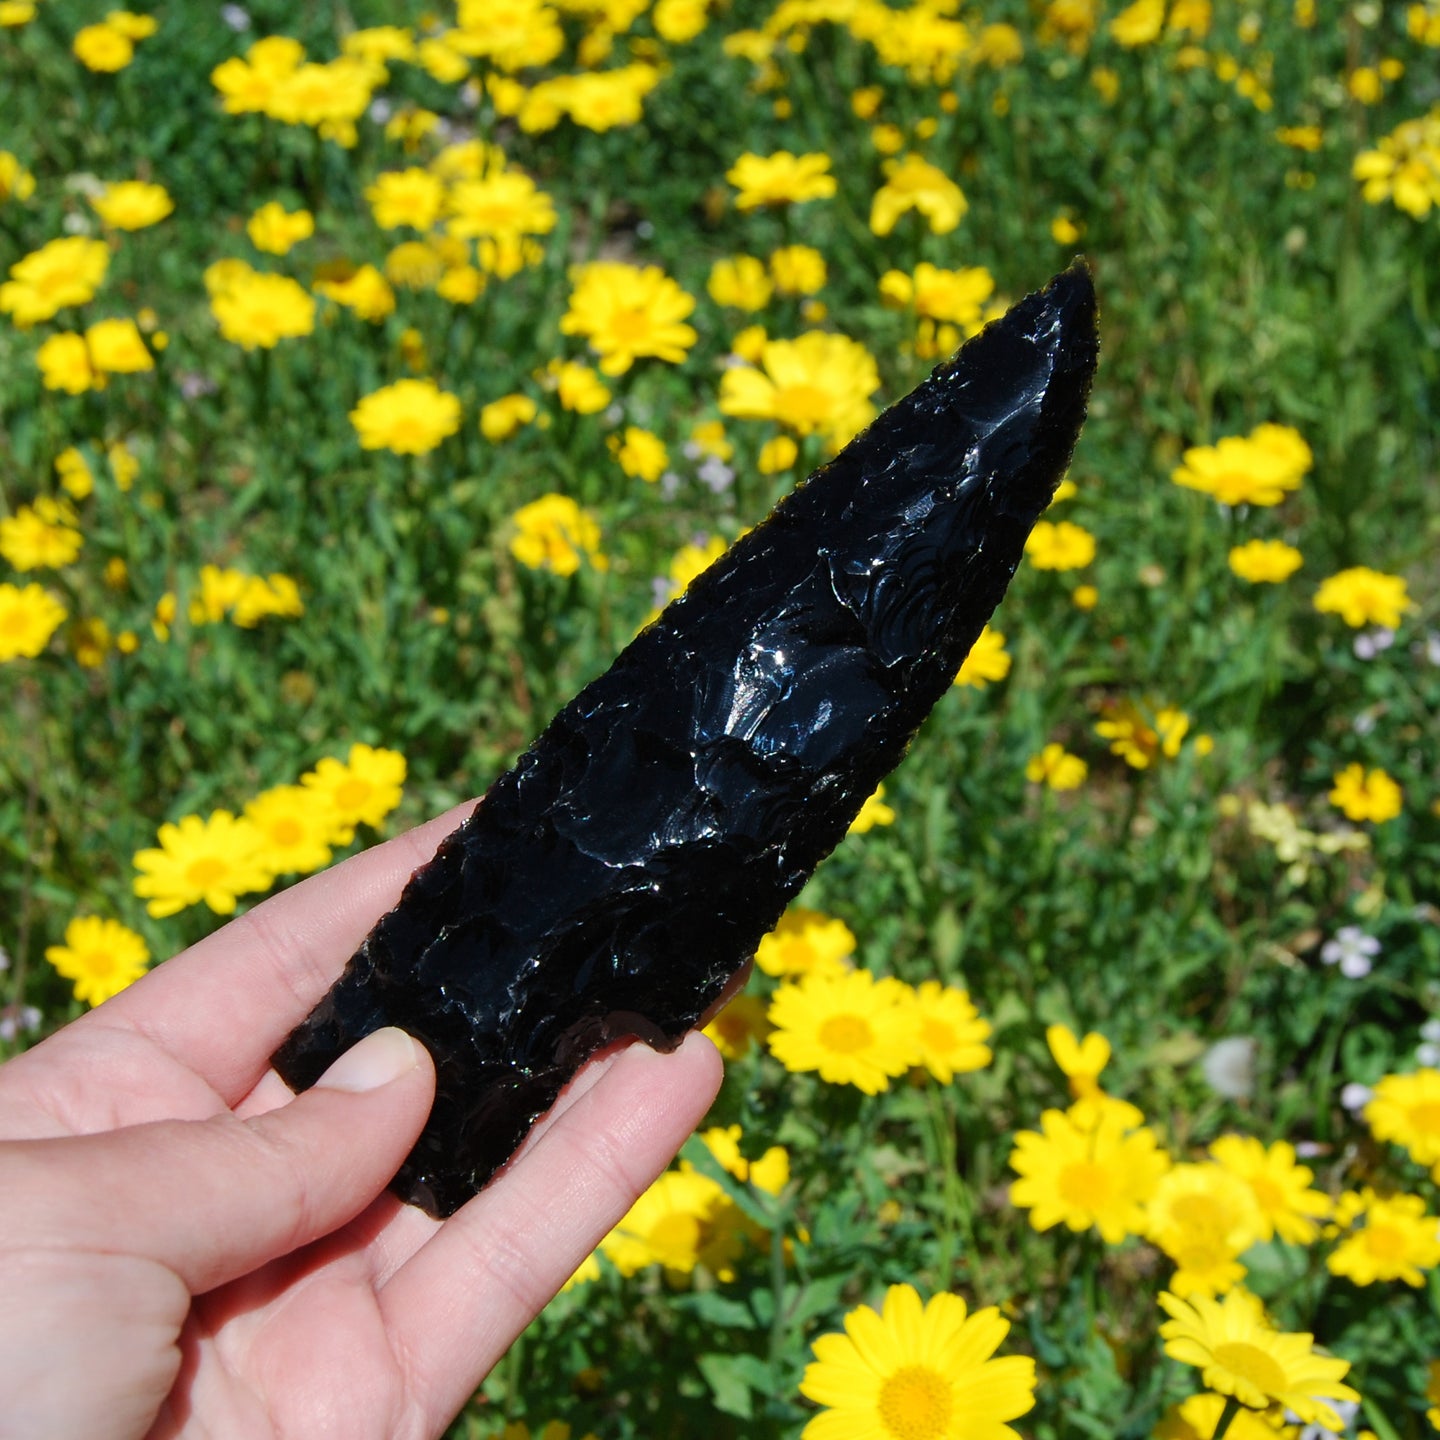 Knapped Black Obsidian Crystal Knife Blades